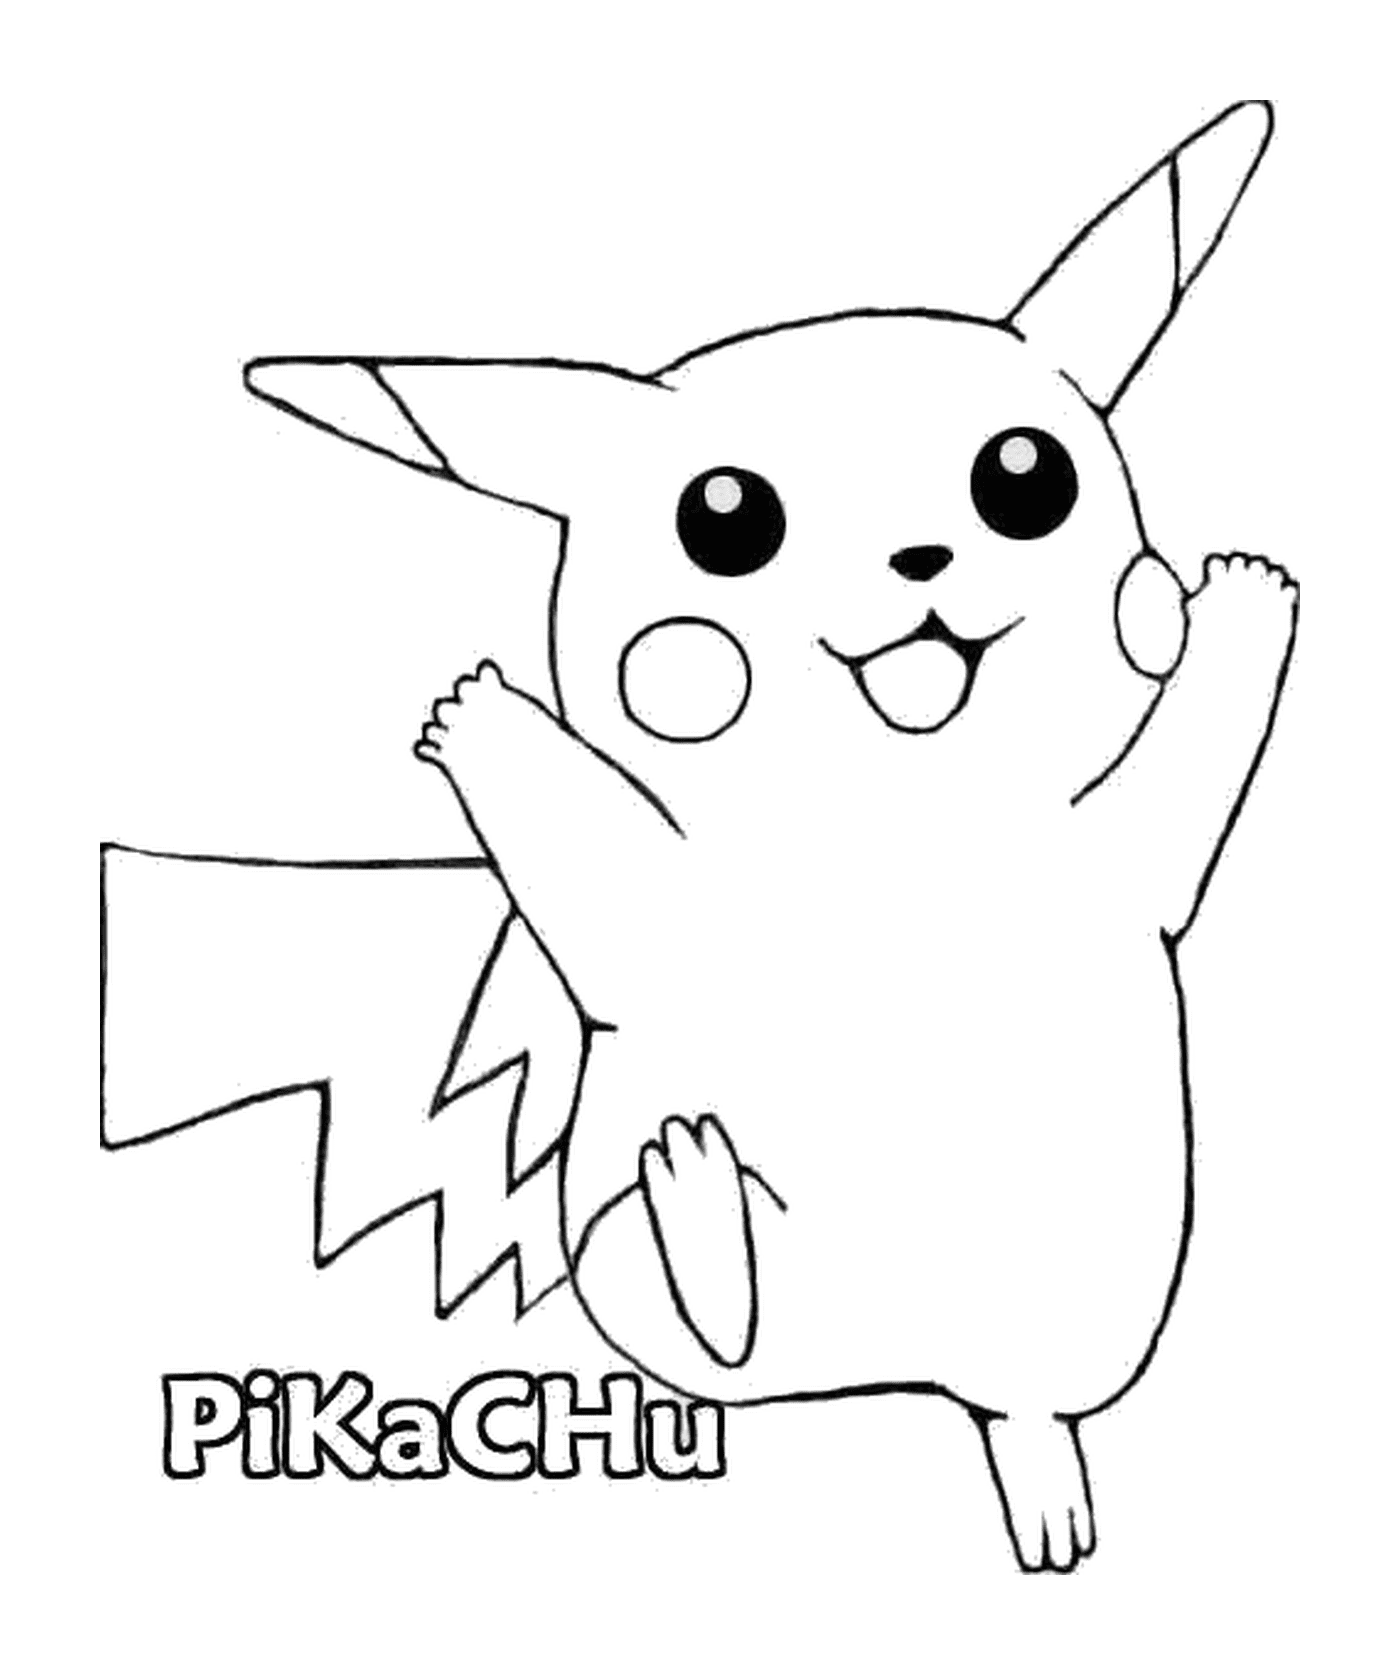  Pikachu : Adorable ratón eléctrico 